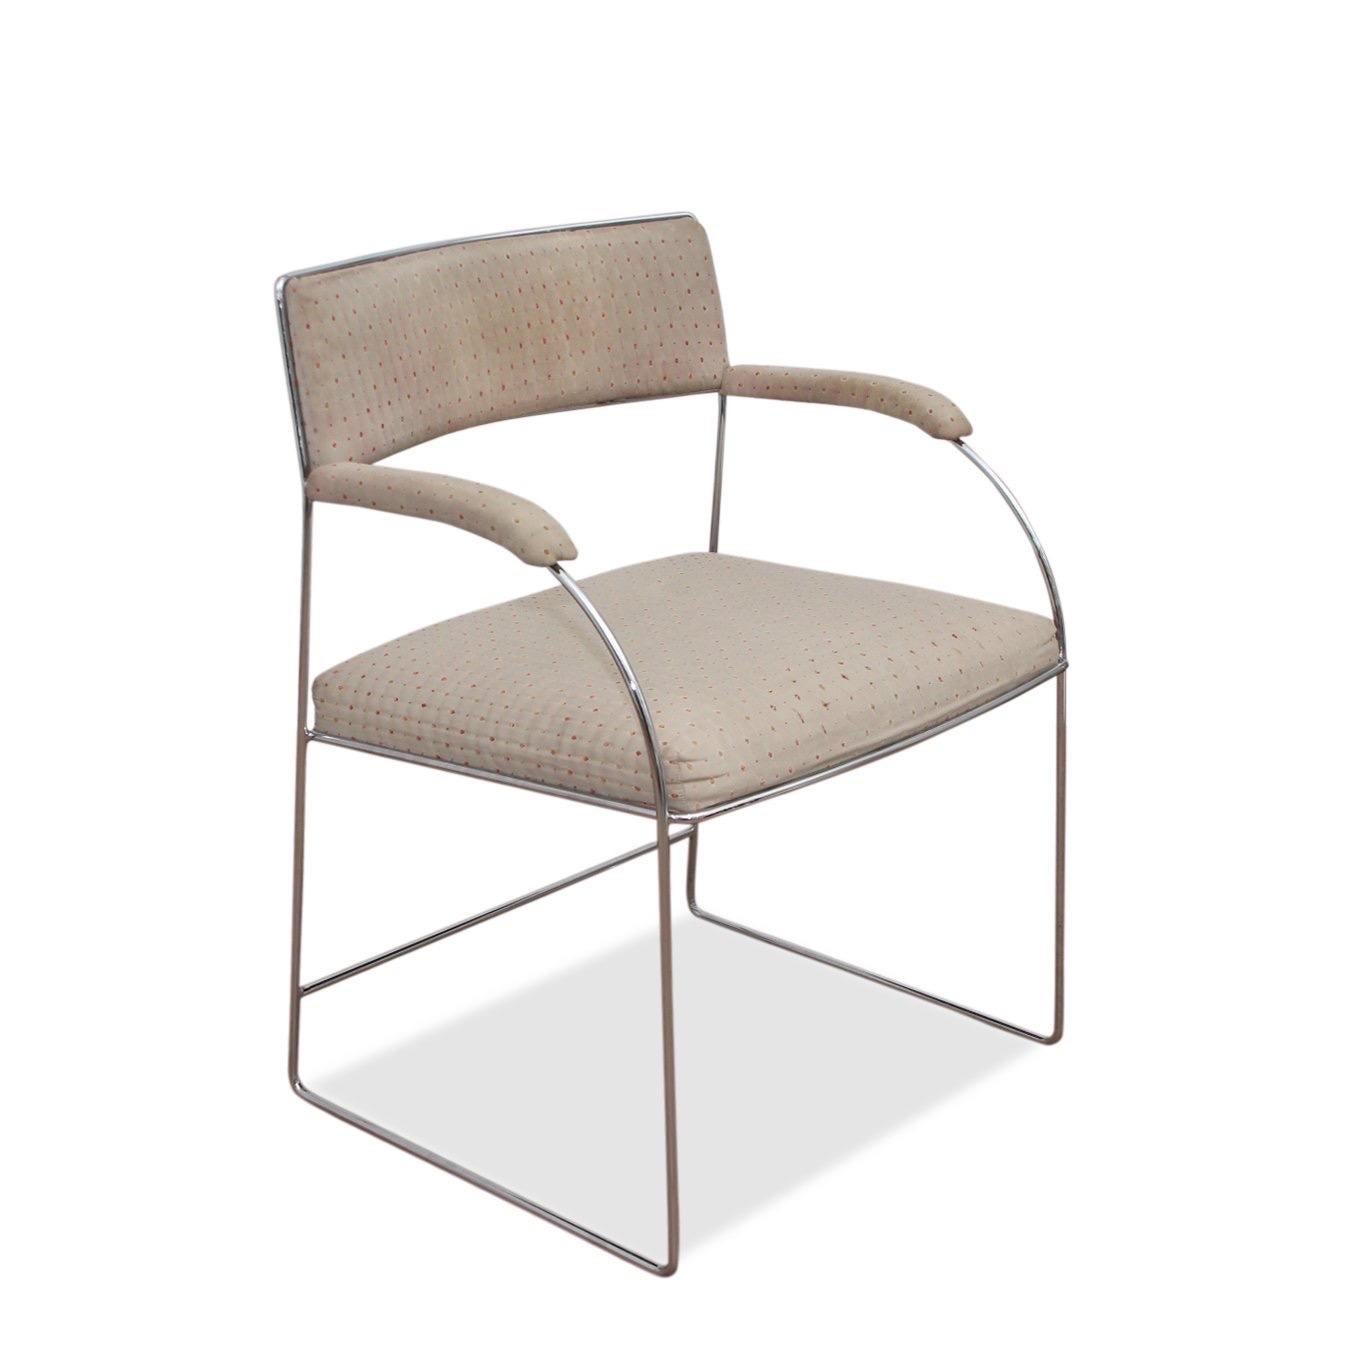 Ensemble de quatre (4) fauteuils de salle à manger finement travaillés par Milo Baughman pour Thayer.

Le prix comprend un nouveau rembourrage personnalisé en COM (Client's Own Material).  Huit (8) mètres de matériau sont nécessaires.  Veuillez